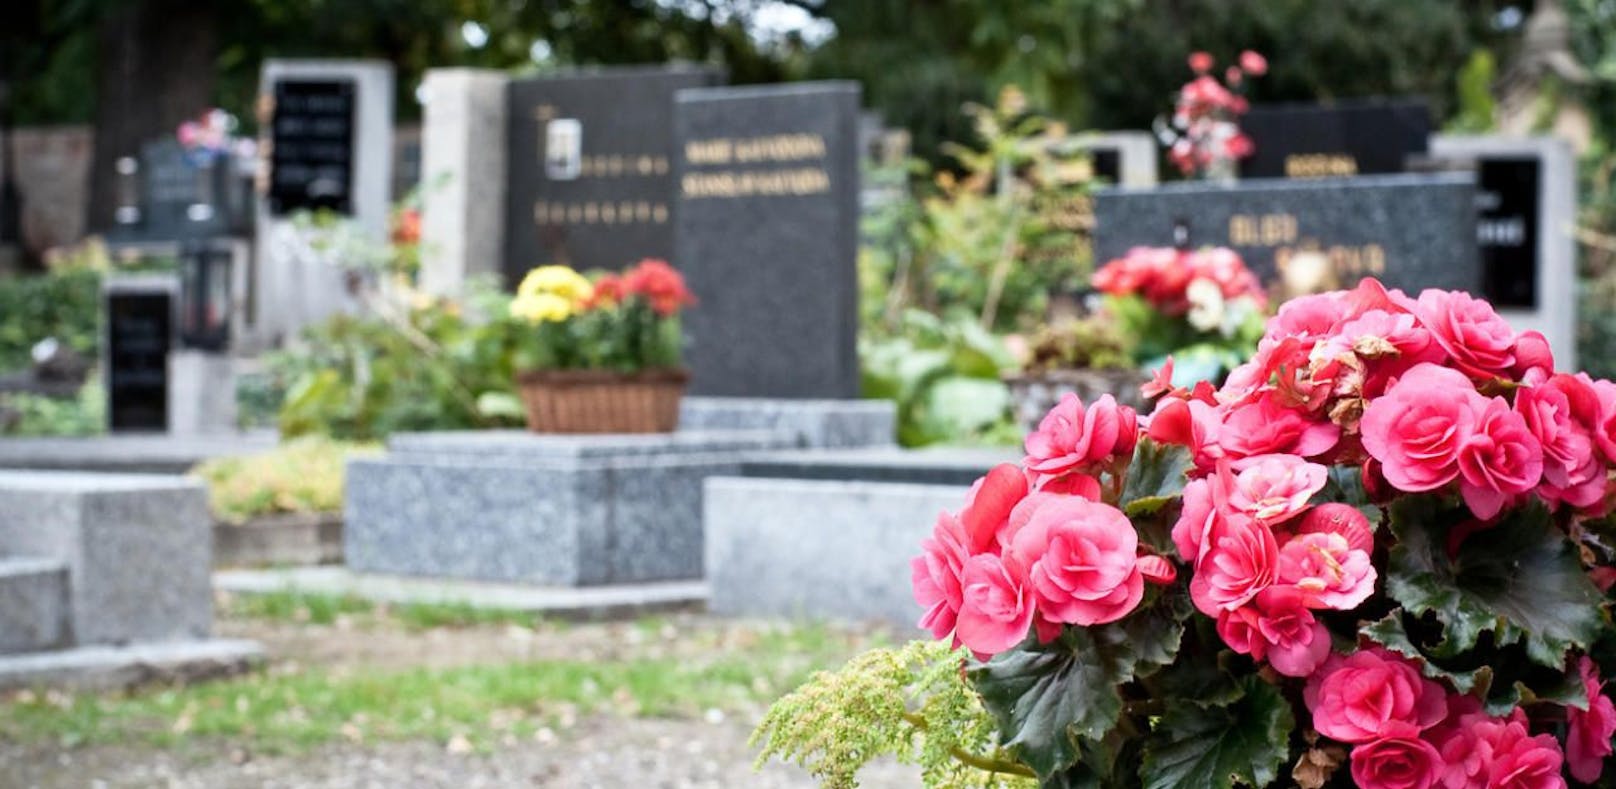 Neun Gräber wurden auf dem Friedhof der Pfarrkirche Klaus verwüstet.